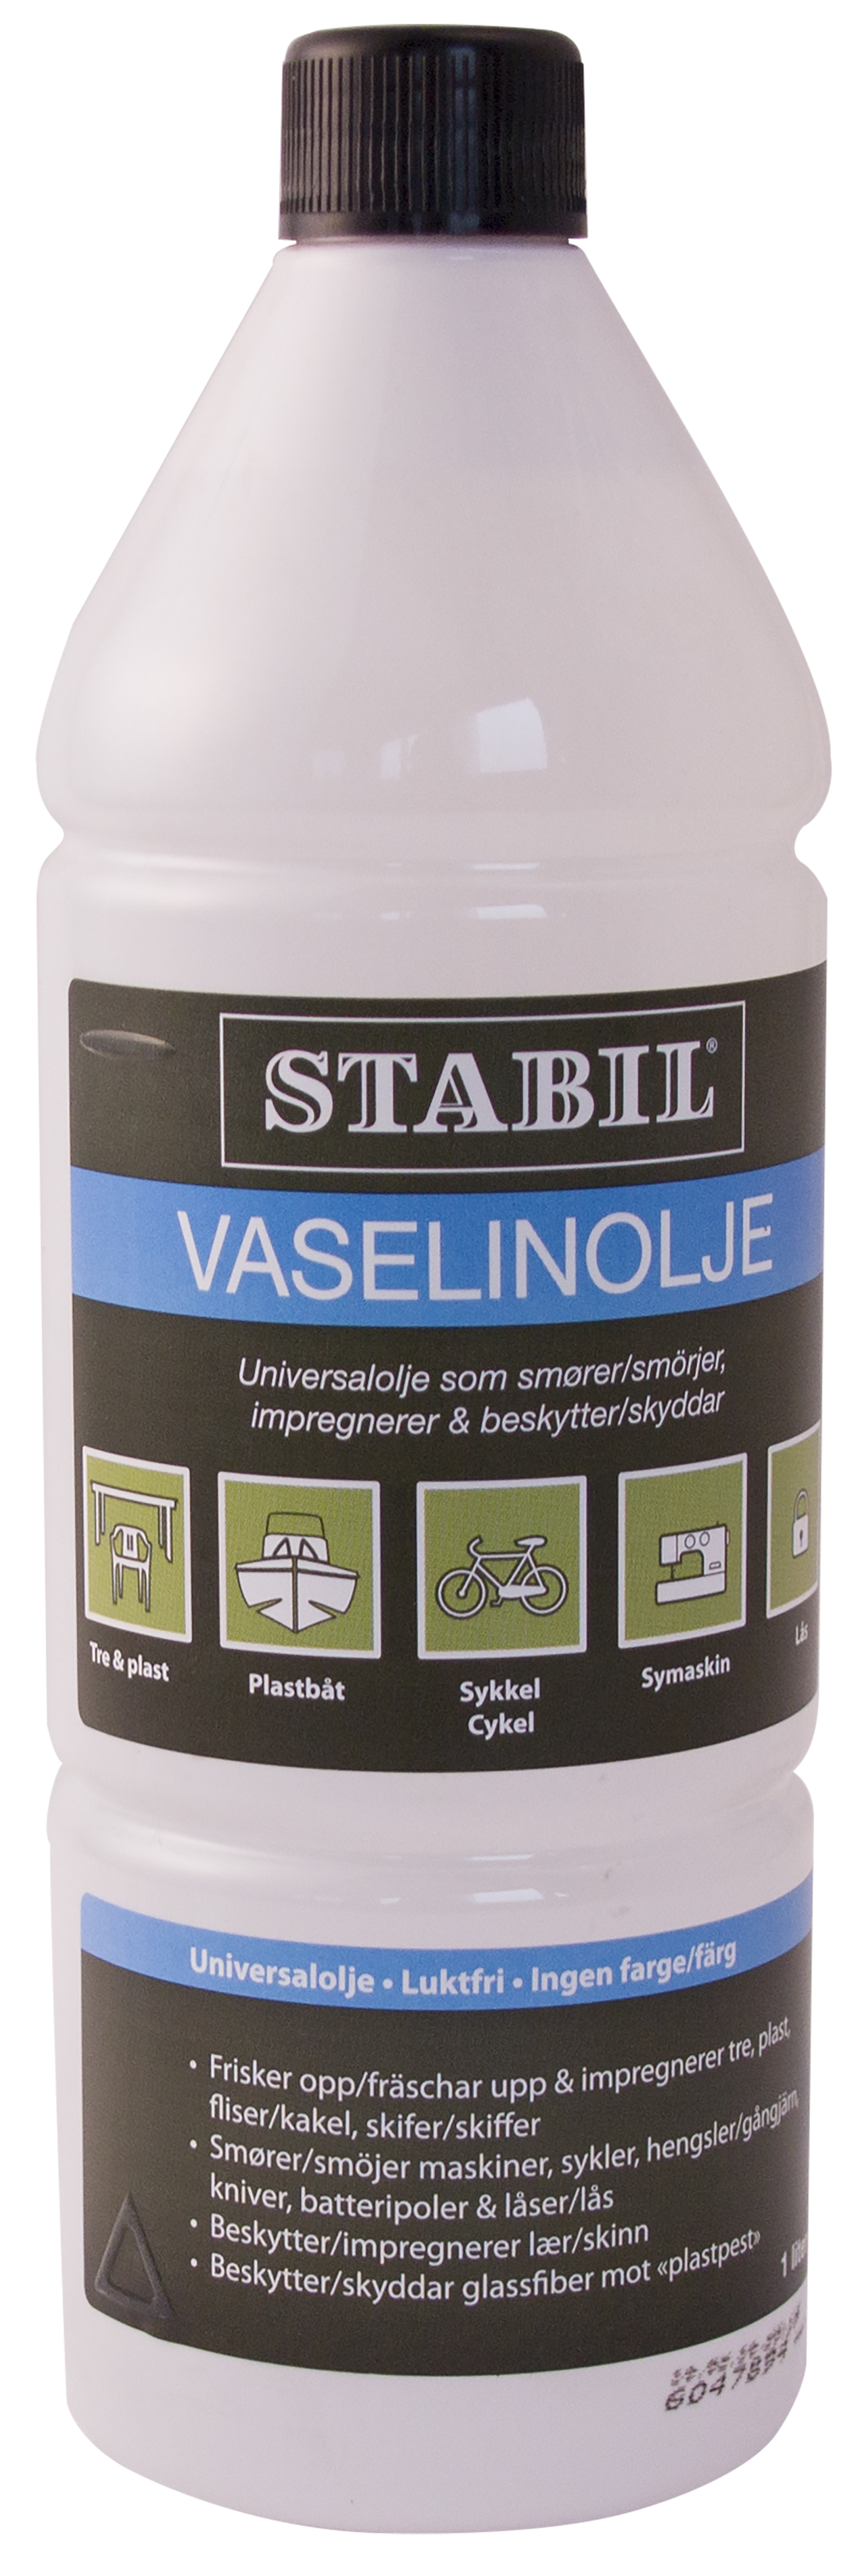 Stabil vaselinolje 1L